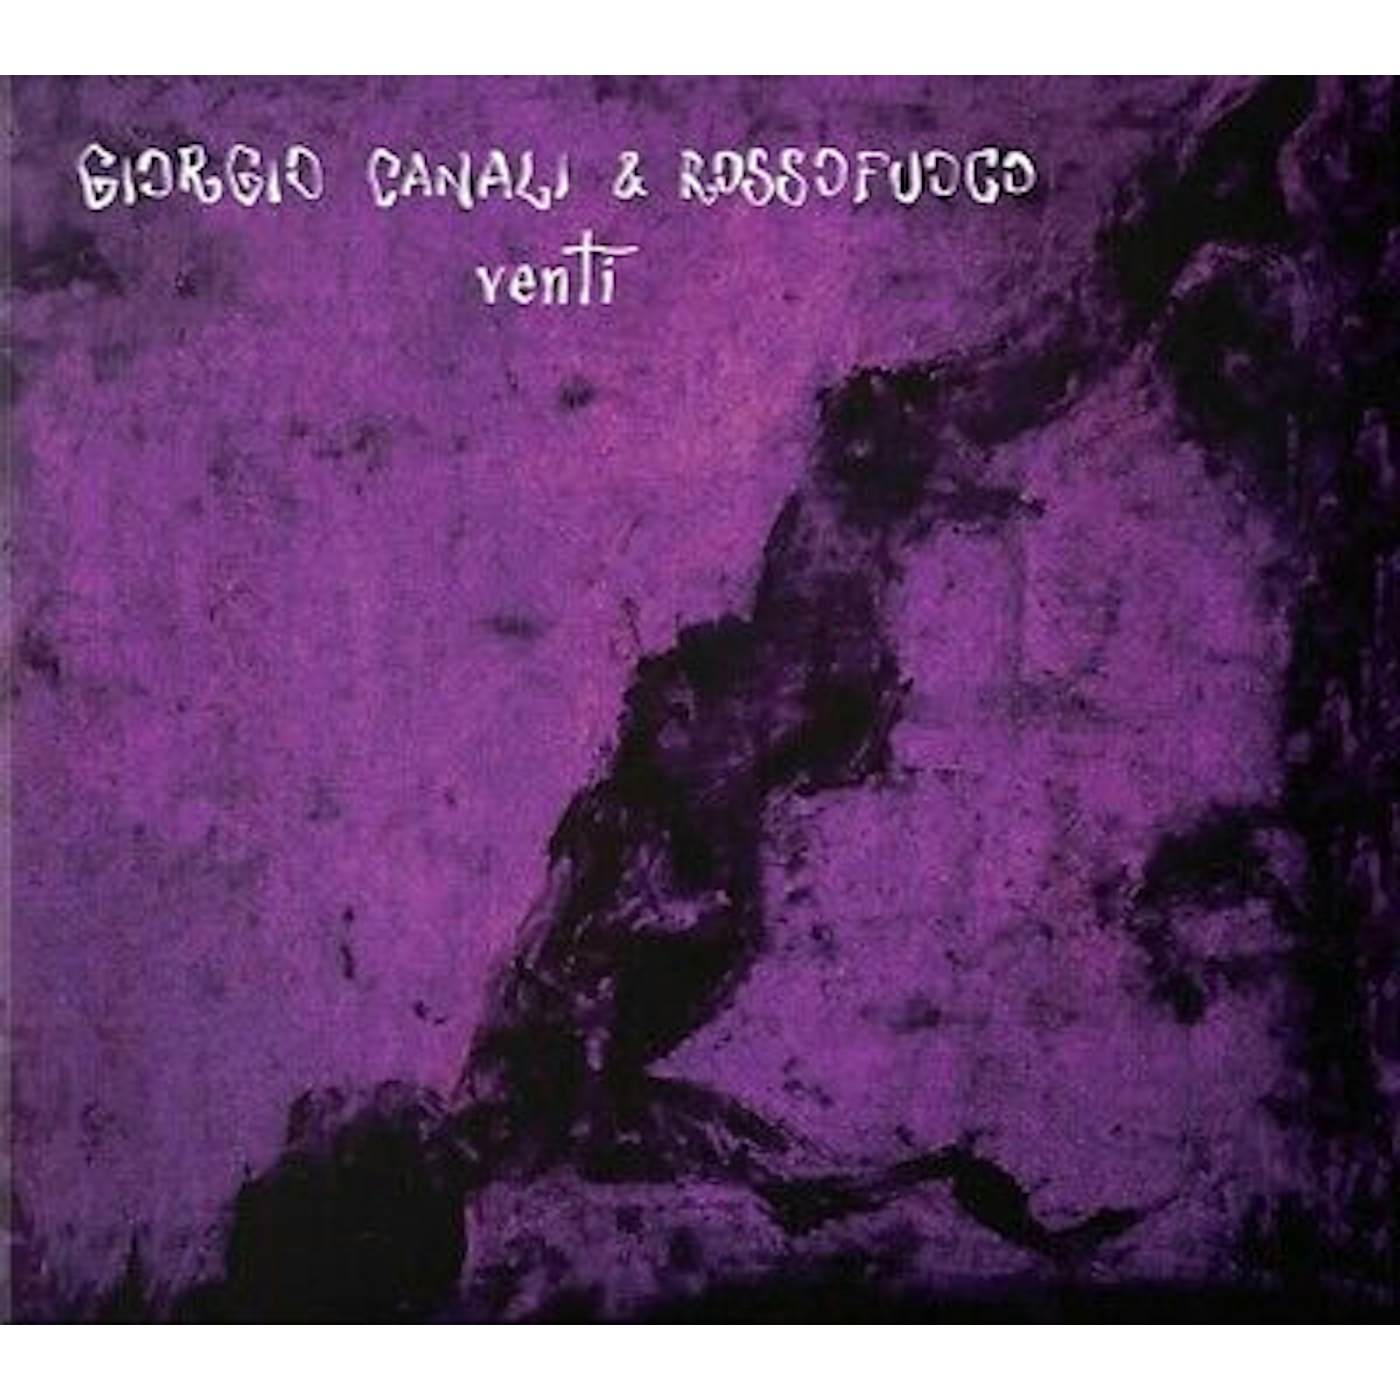 Giorgio Canali & Rossofuoco VENTI Vinyl Record